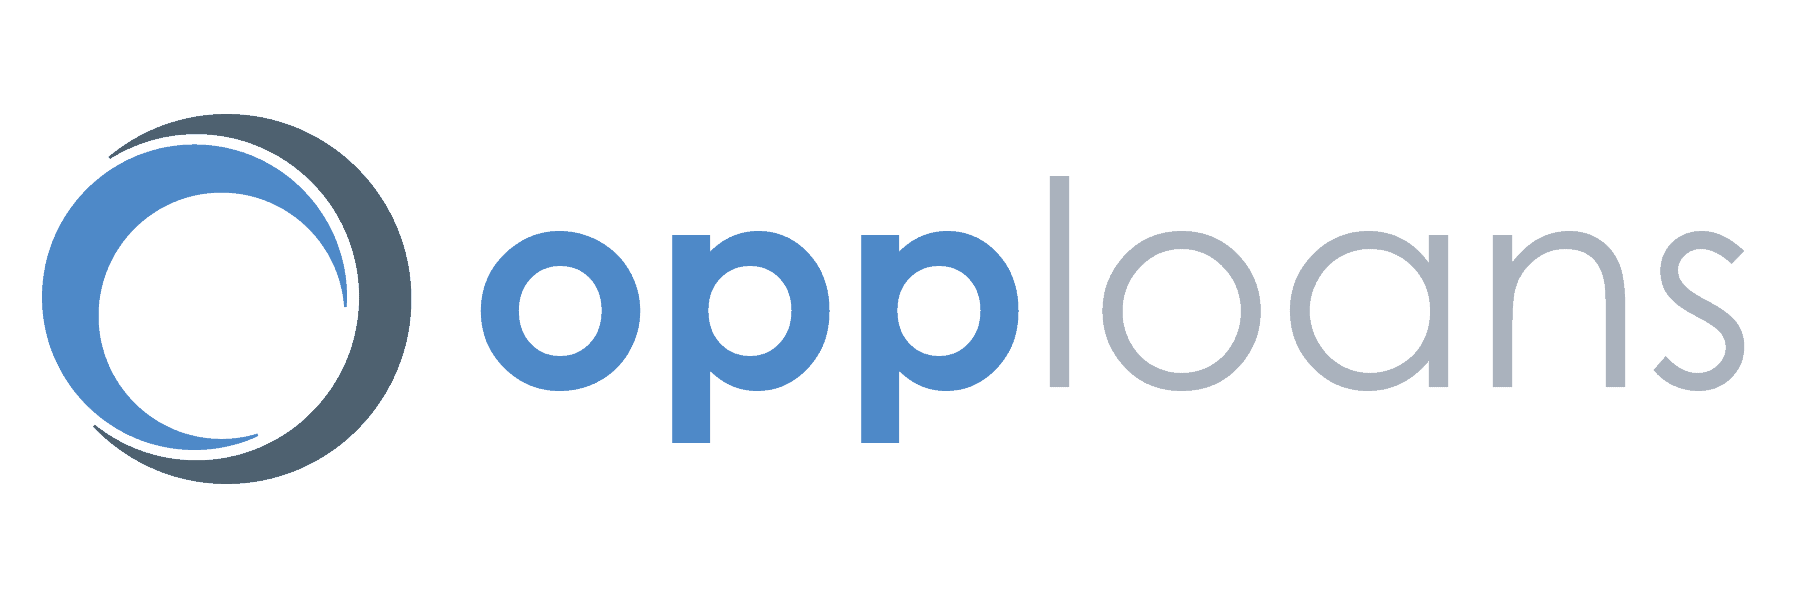 OppLoans_logo